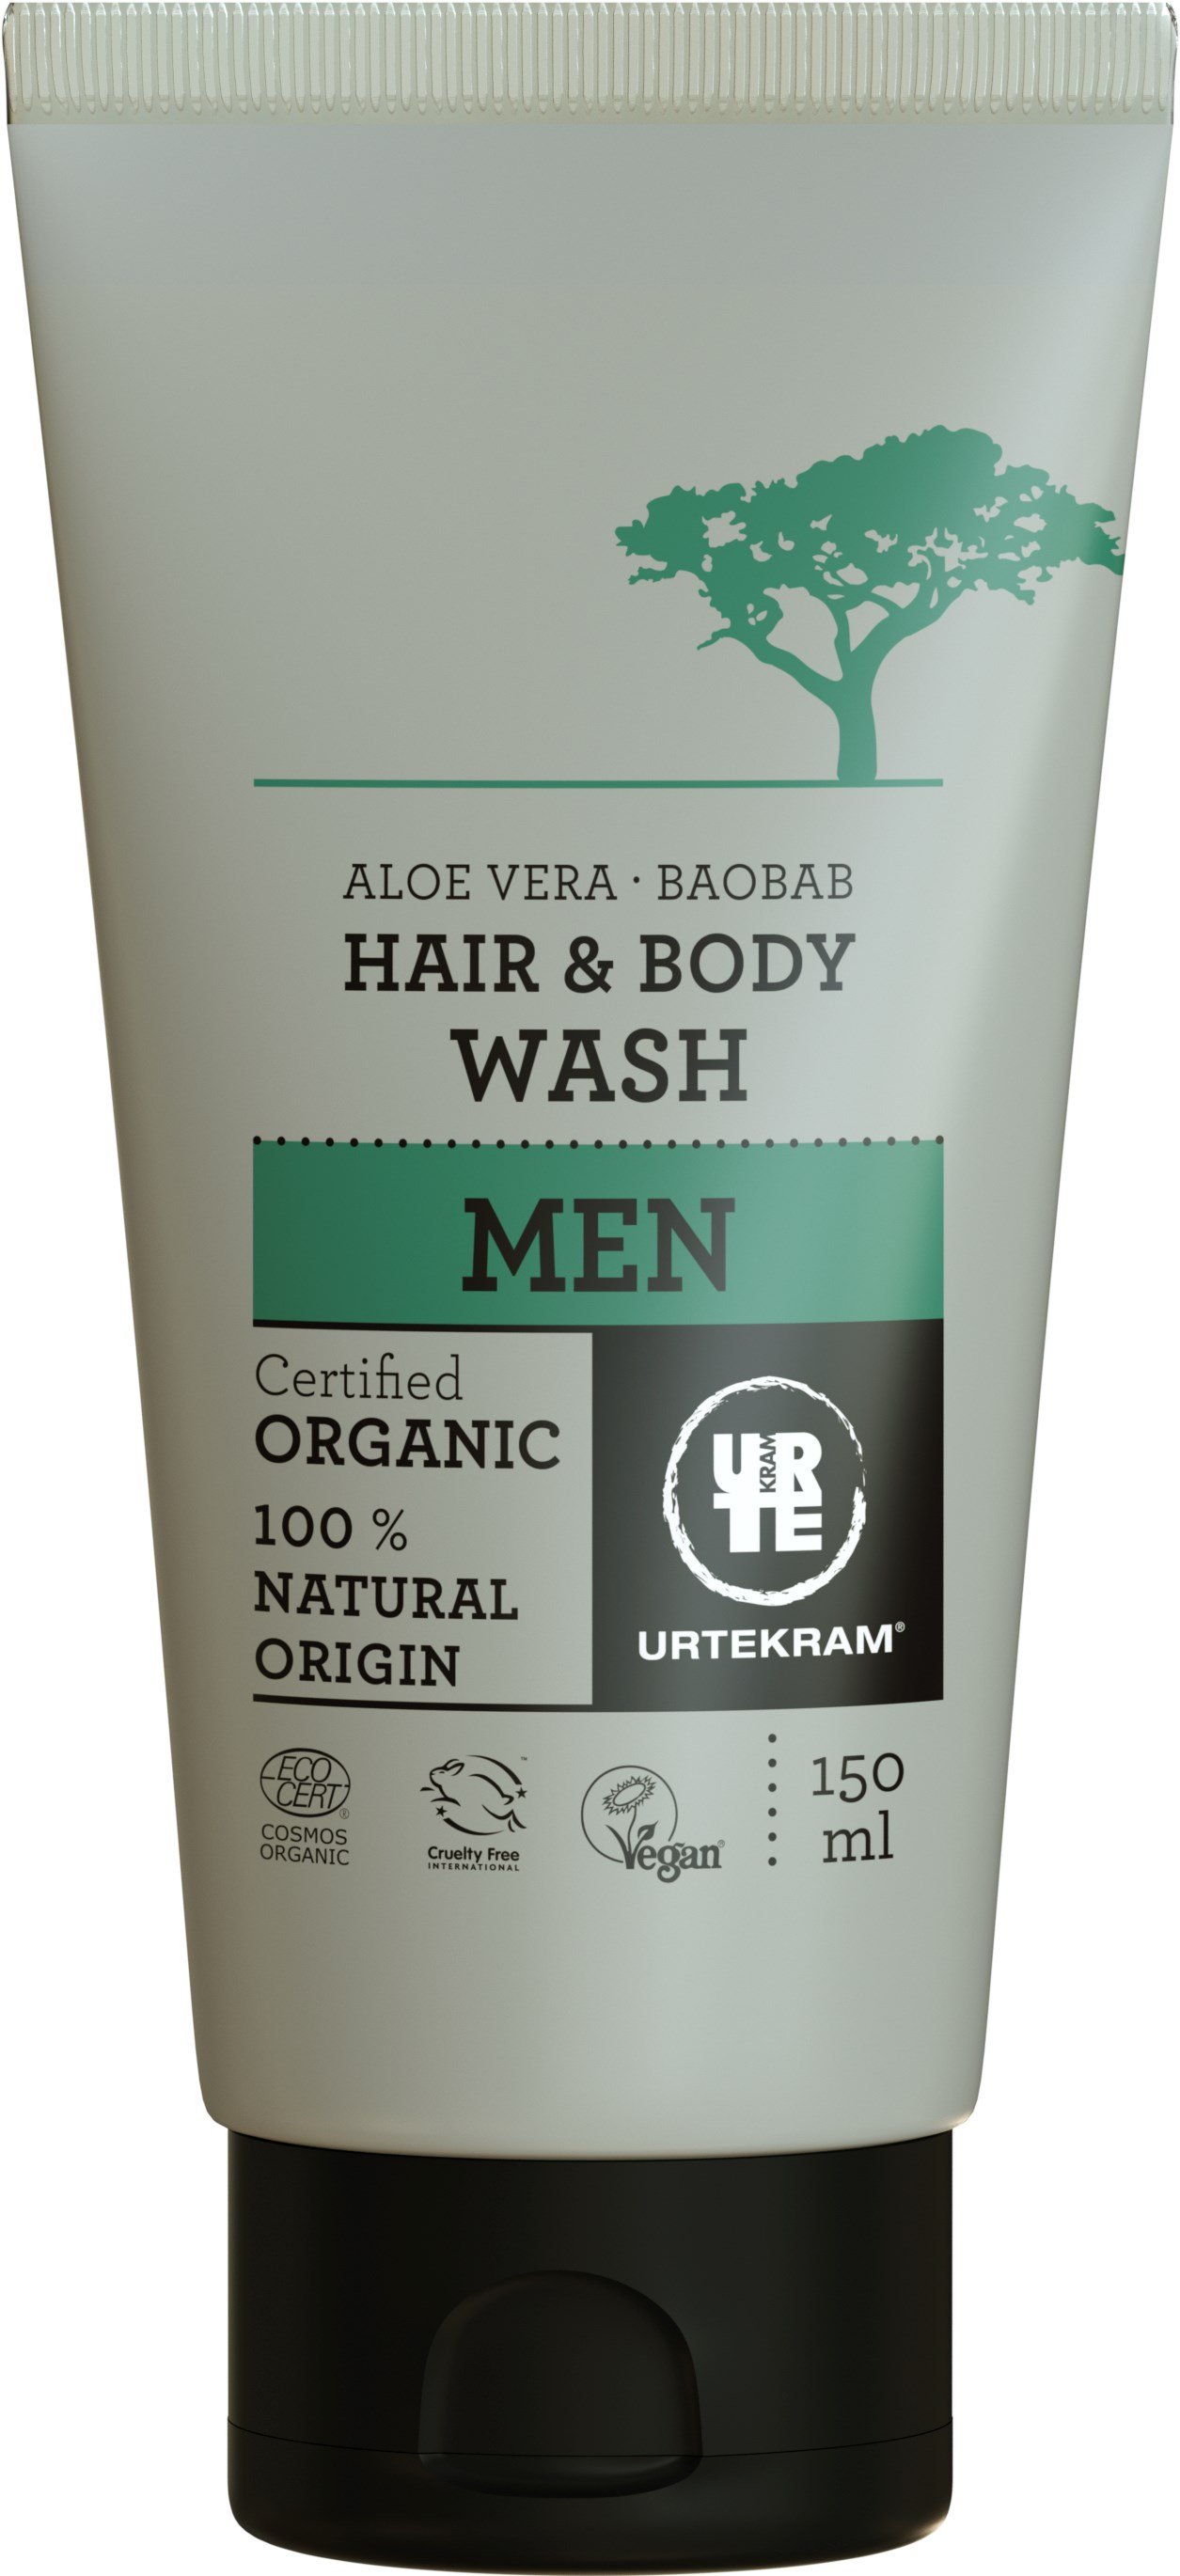 Органічний шампунь для волосся і тіла Urtekram Баобаб і Алое Вера, для чоловіків, 150 мл - фото 1